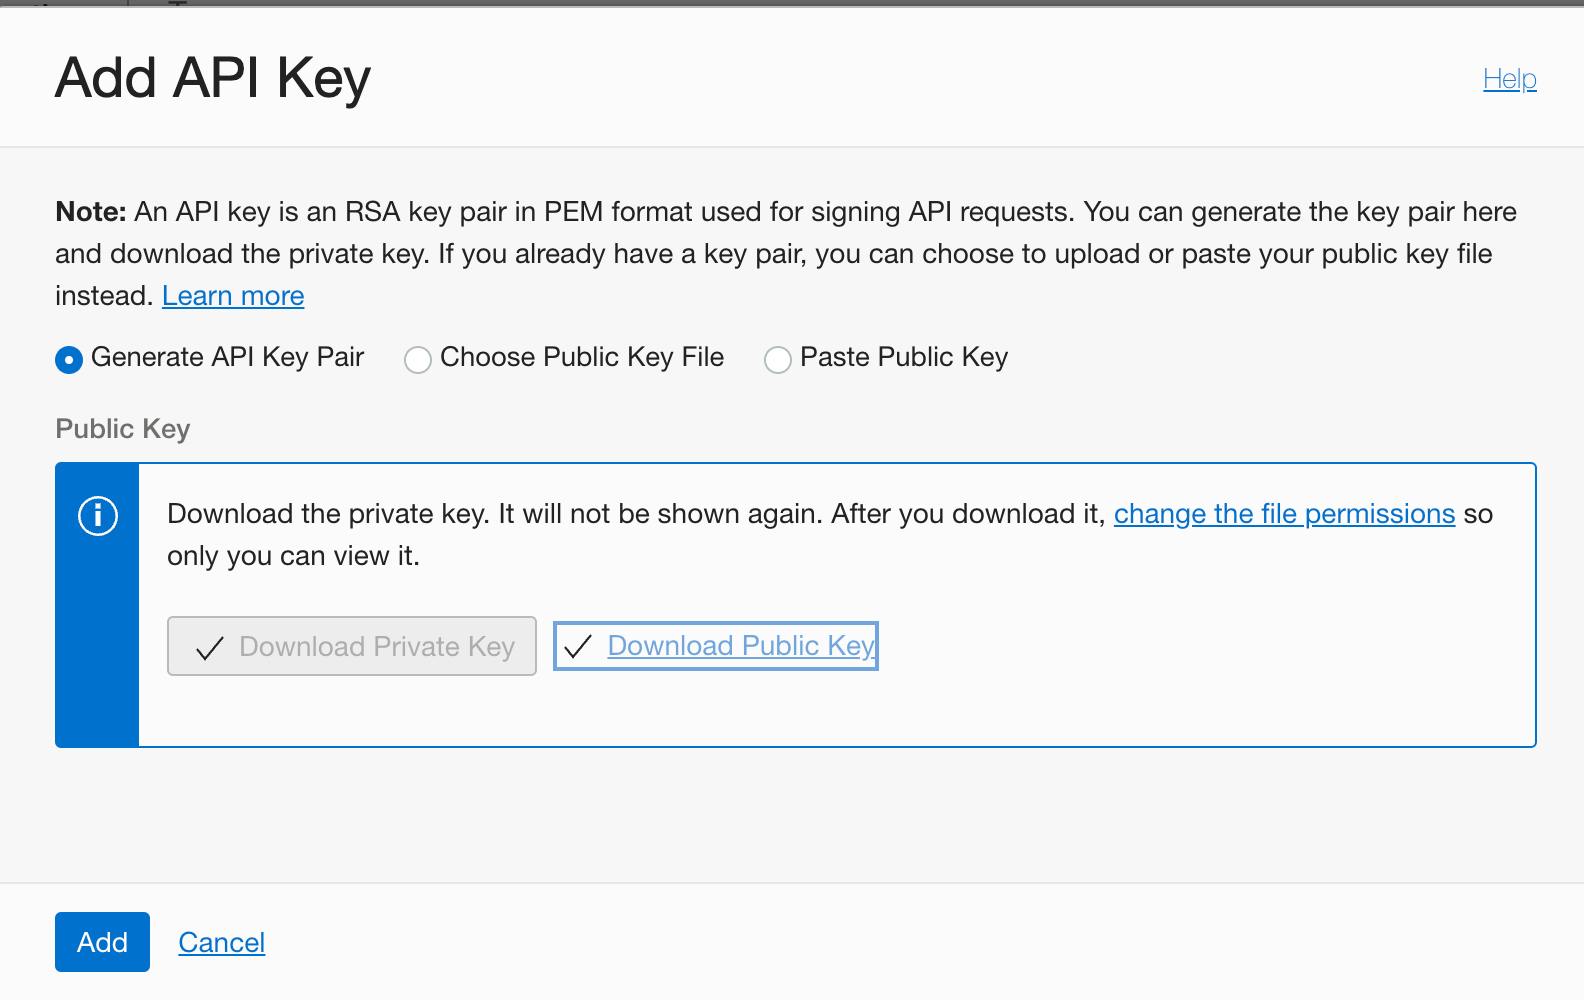 Generate API Key Pair